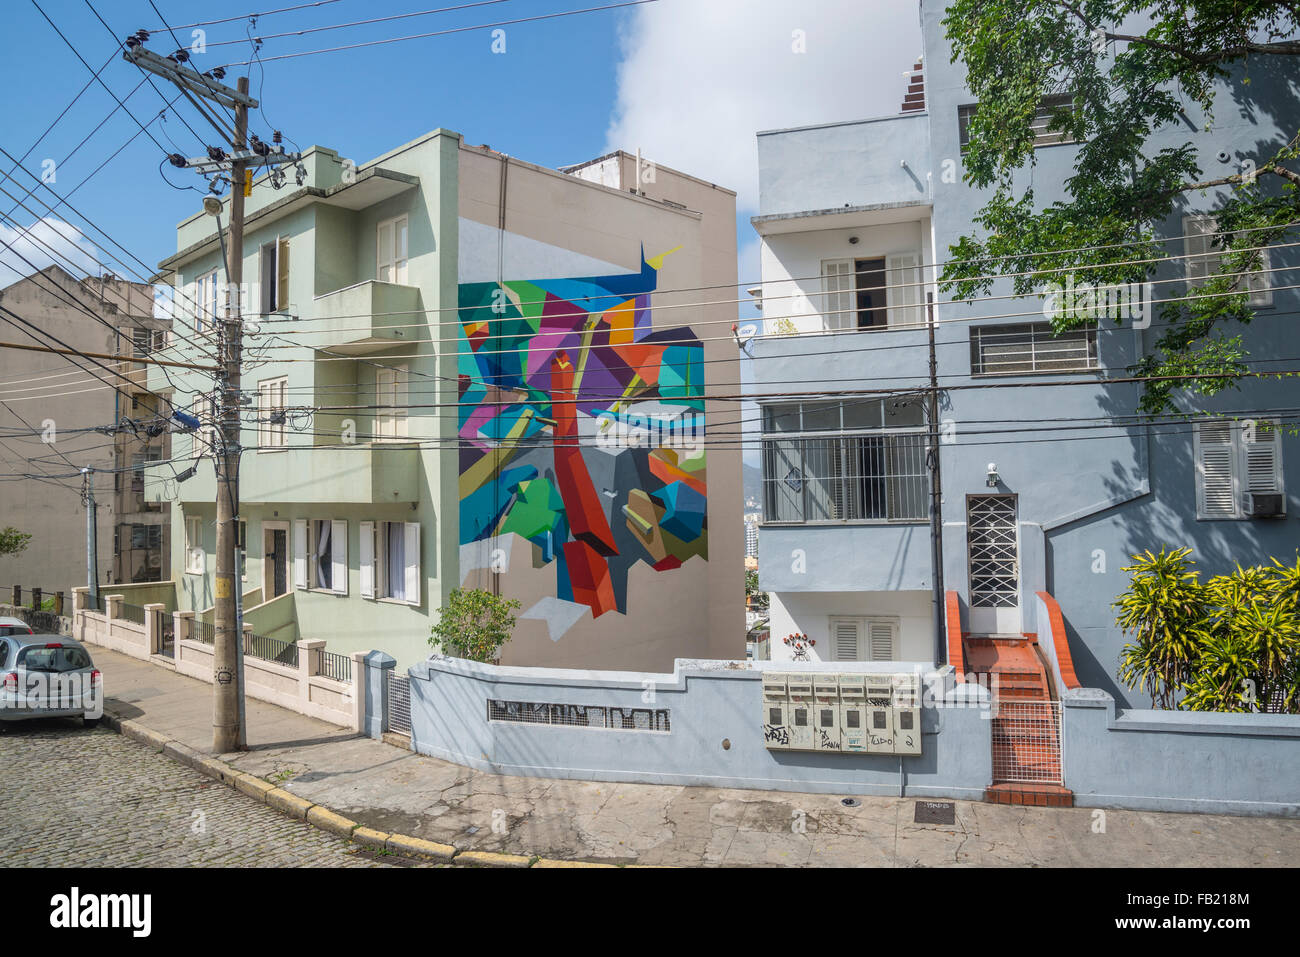 Street, Santa Teresa, Rio de Janeiro, Brazil Stock Photo